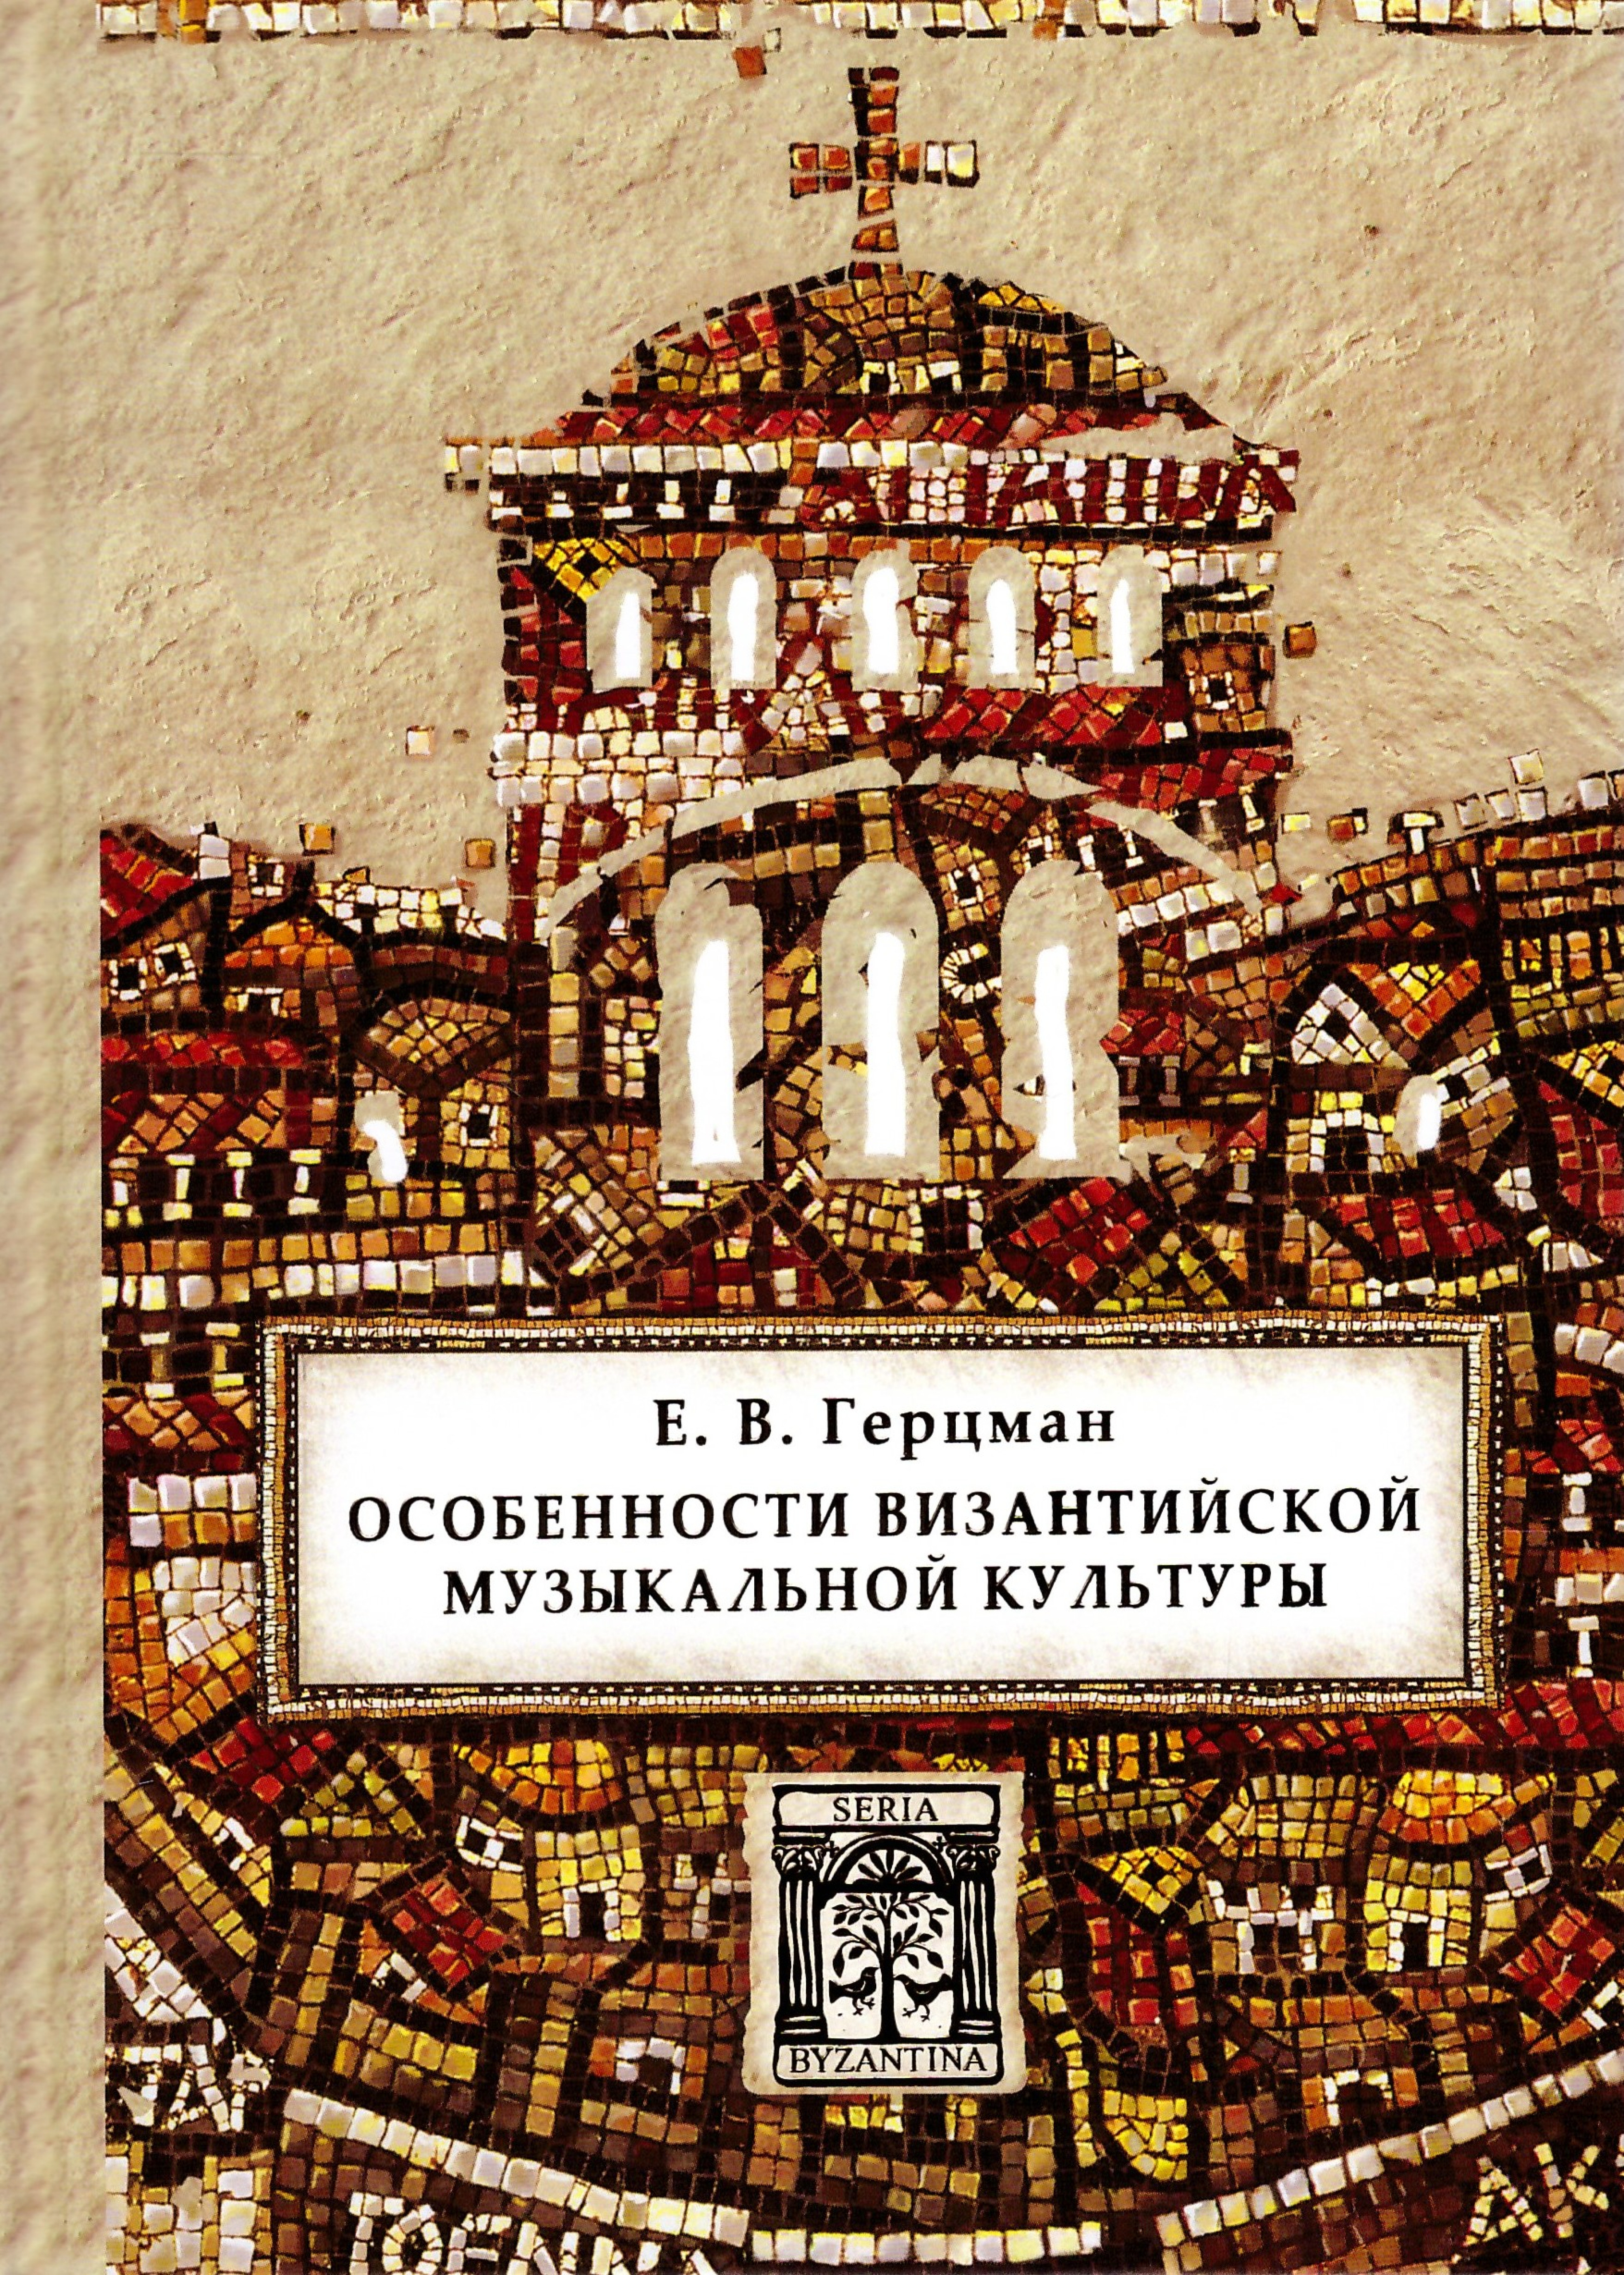 Особенности византийской музыкальной культуры